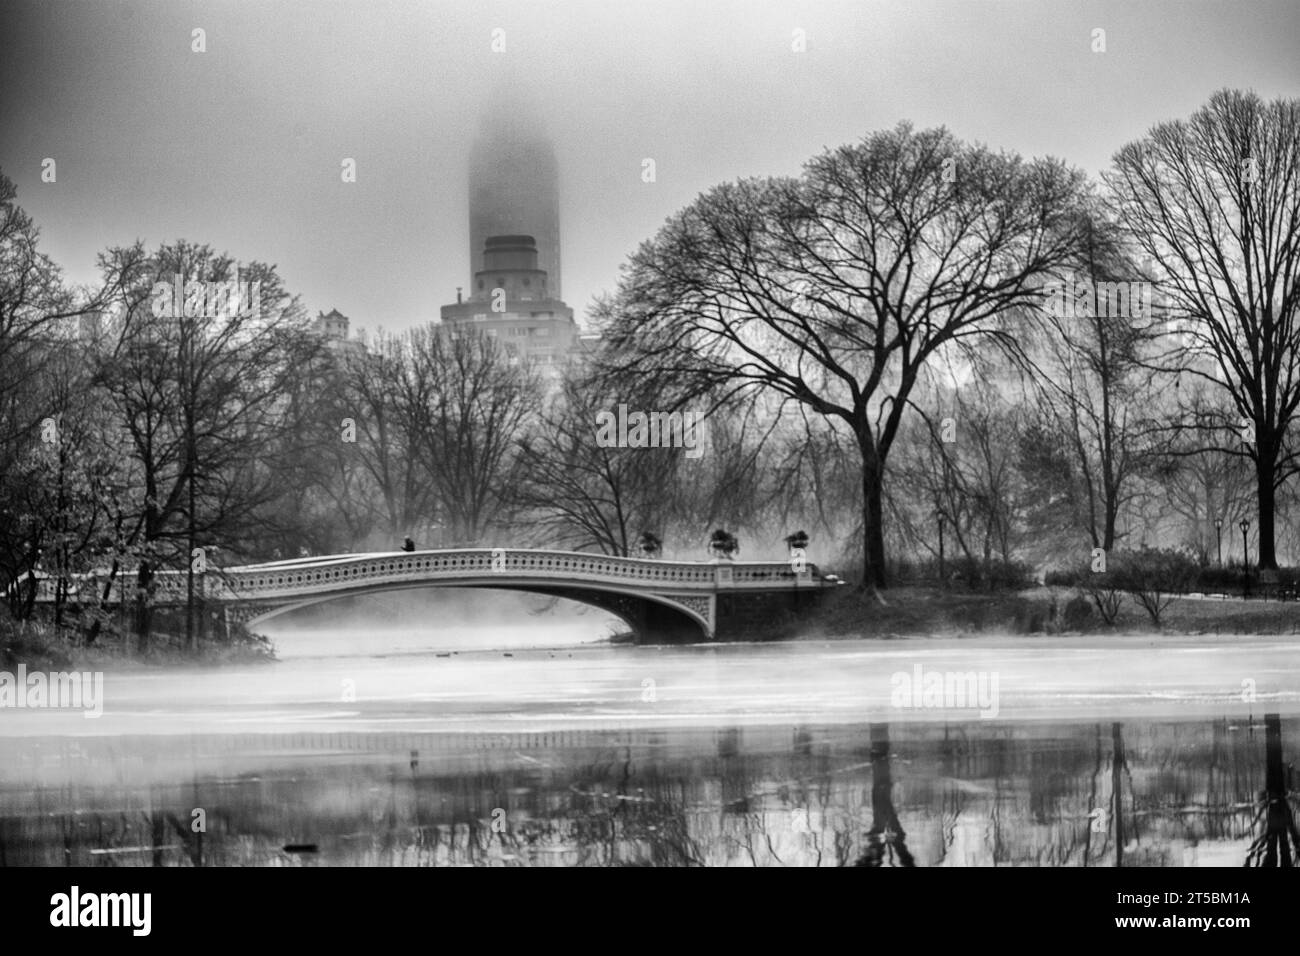 Ein hochwertiges Stockfoto der bezaubernden Bow Bridge, eines der berühmtesten Wahrzeichen des Central Parks. Das Foto zeigt das elegante Gusseisen der Brücke Stockfoto